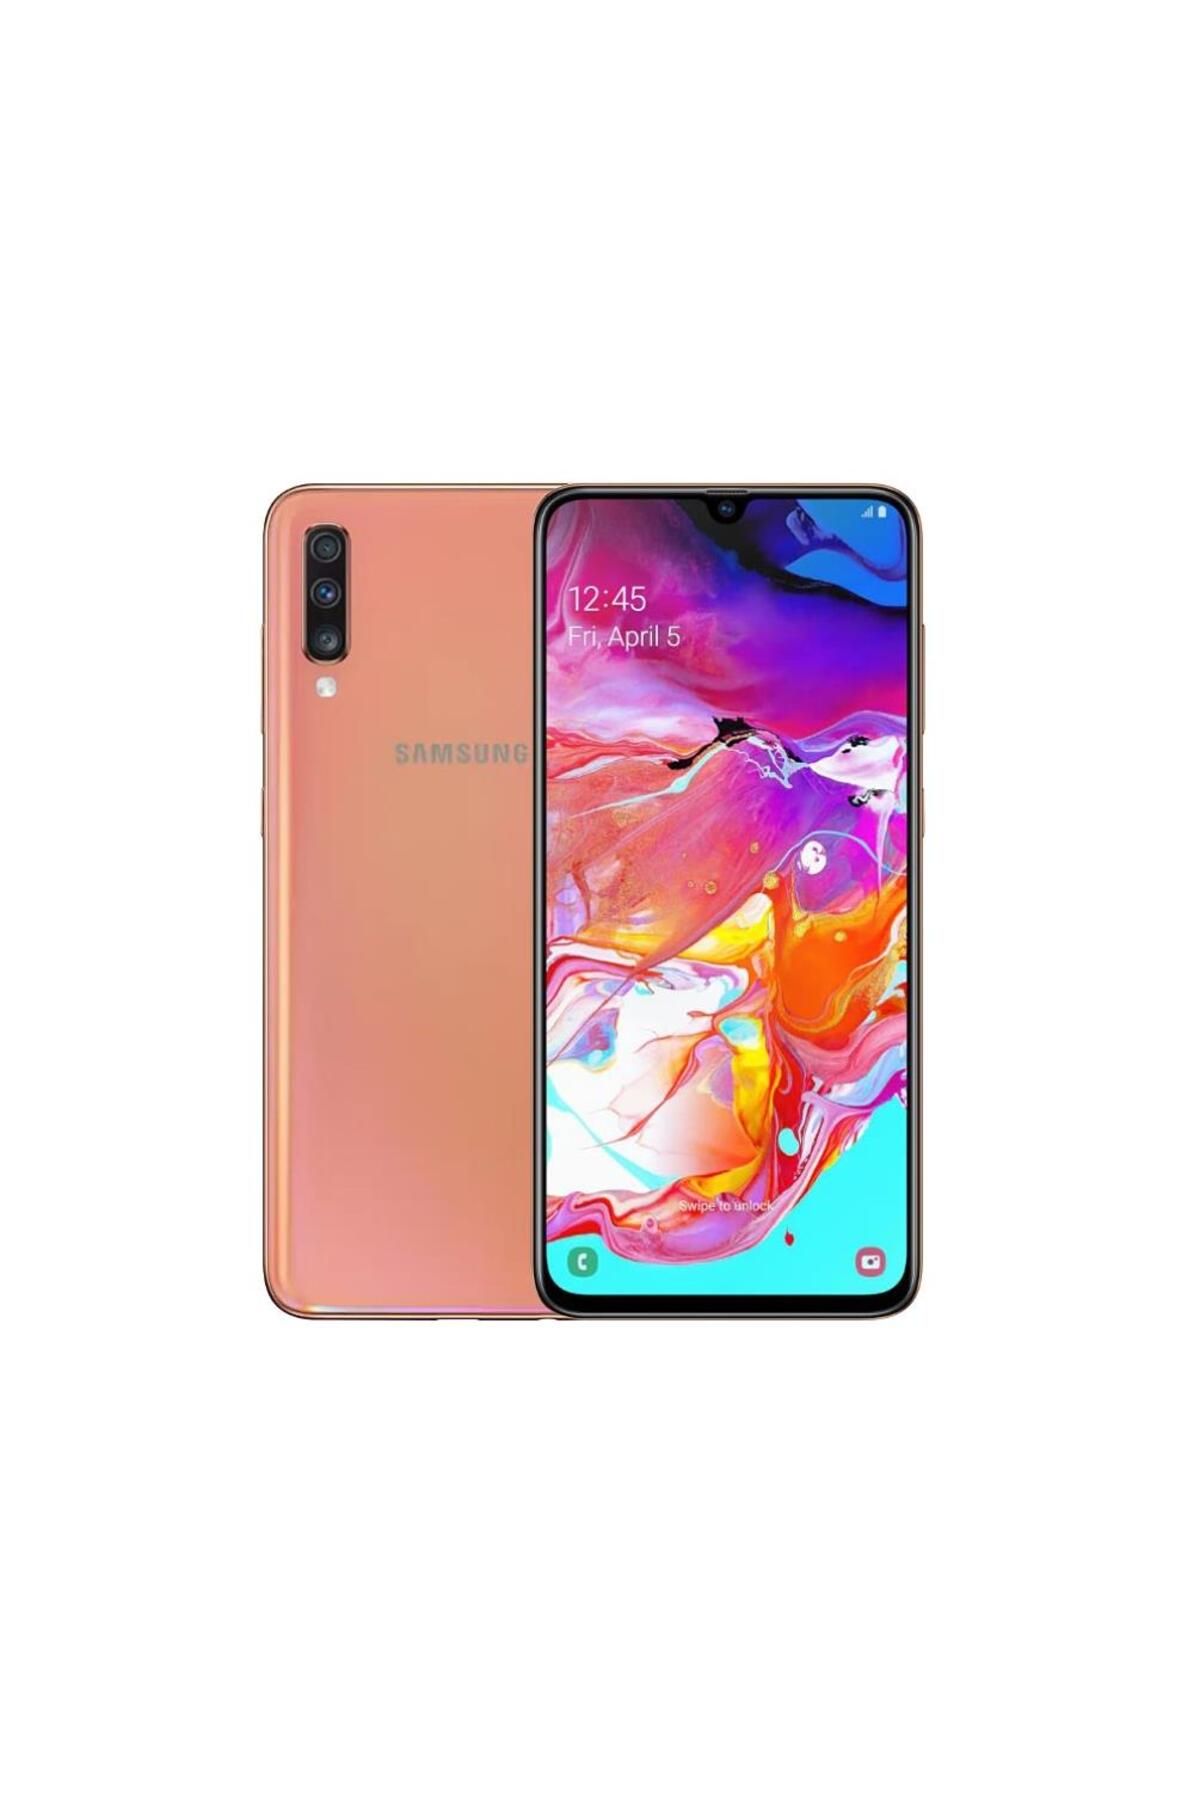 Samsung Yenilenmiş Samsung Galaxy A70 128 GB (12 Ay Garantili) - B Grade